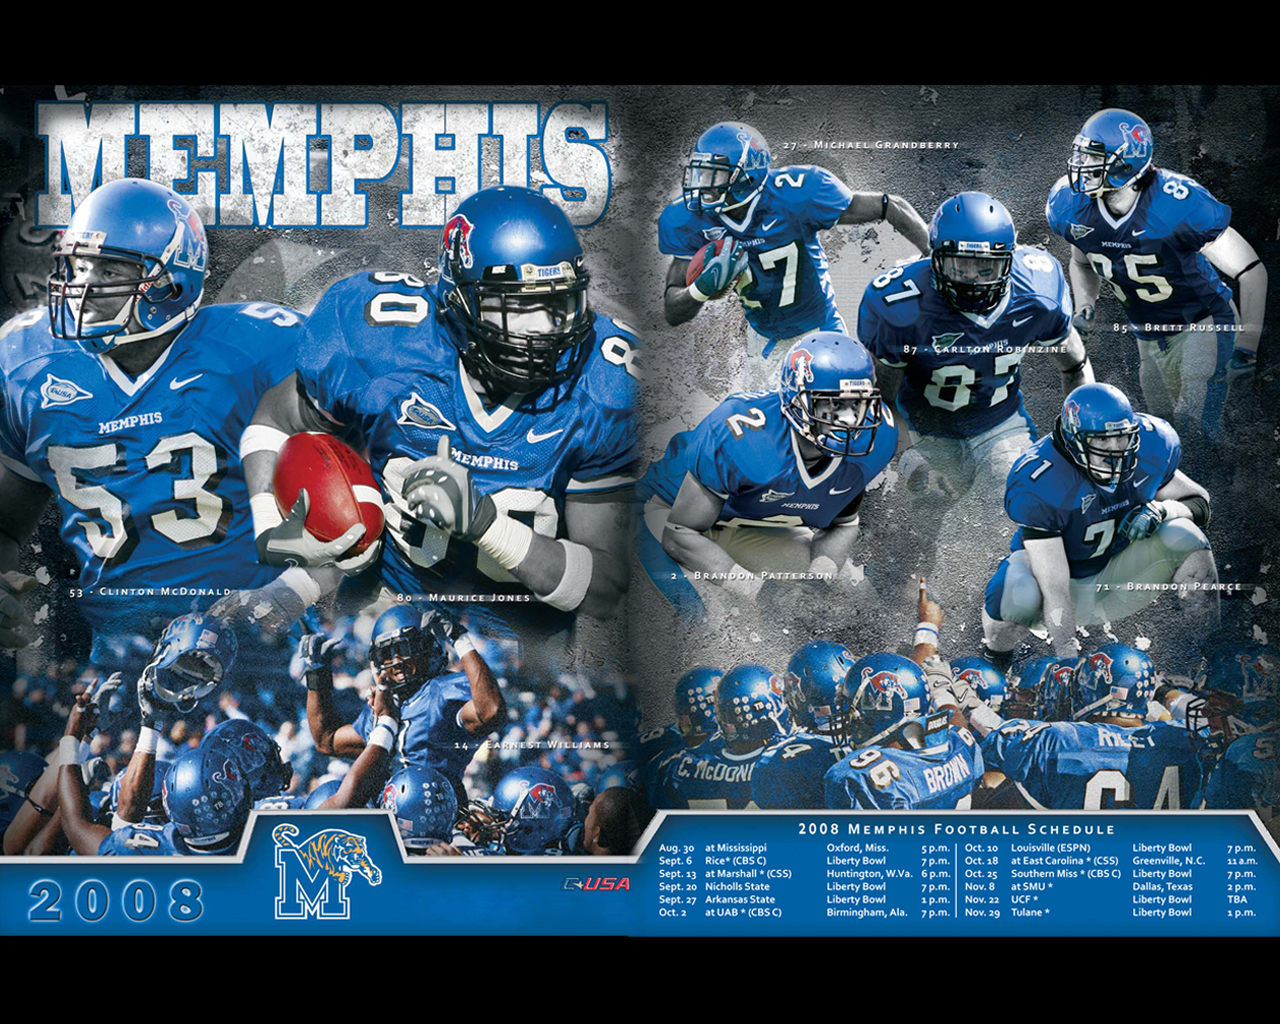 University of Memphis Wallpaper - WallpaperSafari1280 x 1024